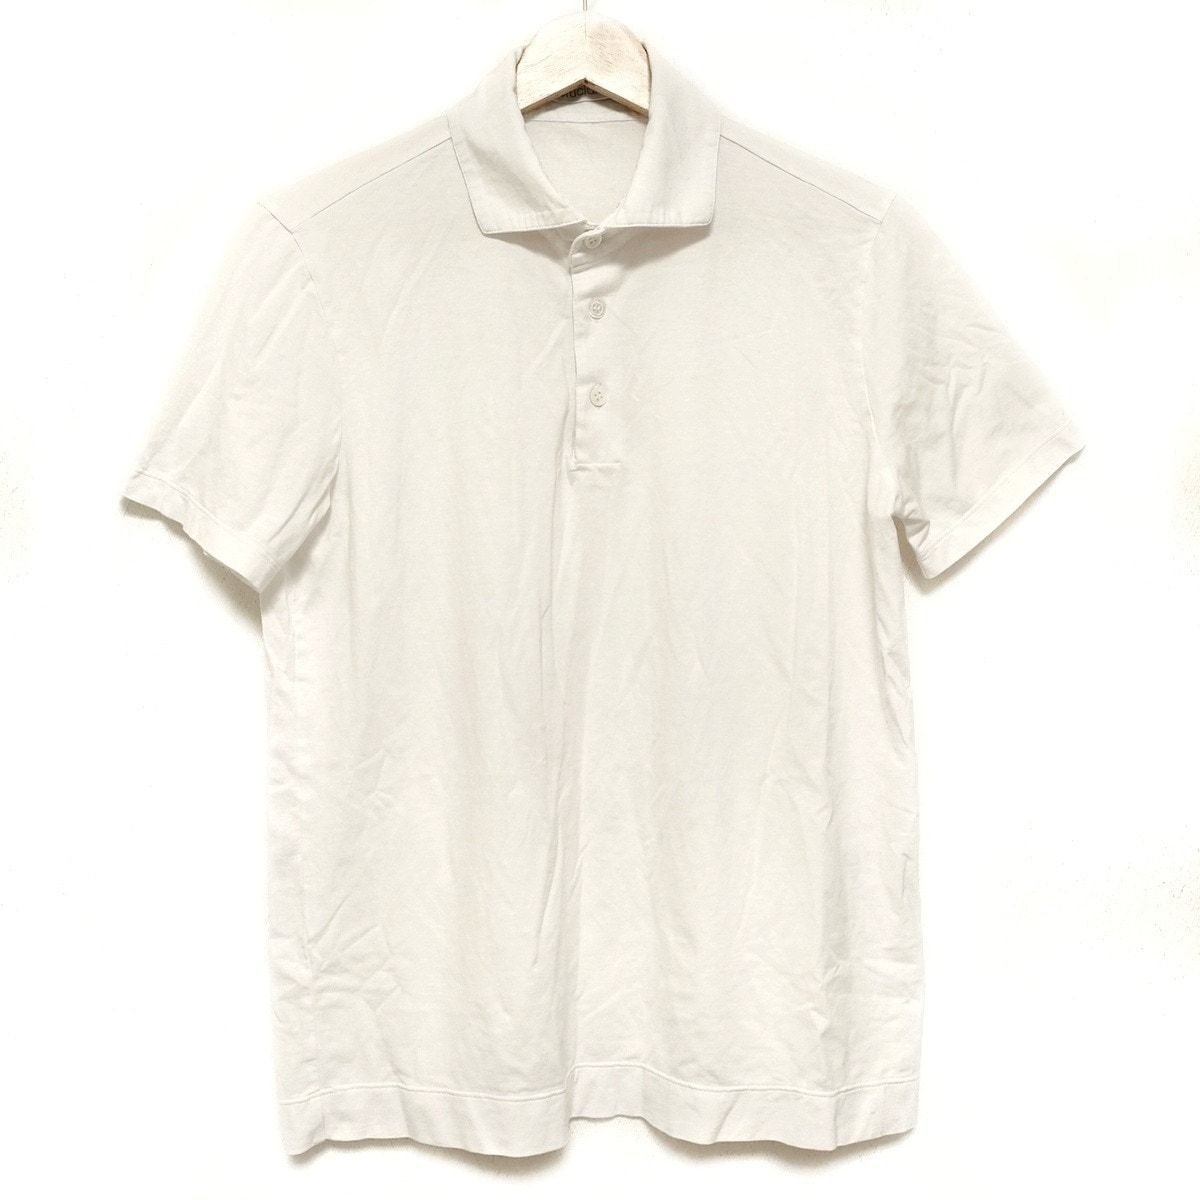 Cruciani(クルチアーニ) 半袖ポロシャツ サイズ48 XL メンズ - 白 